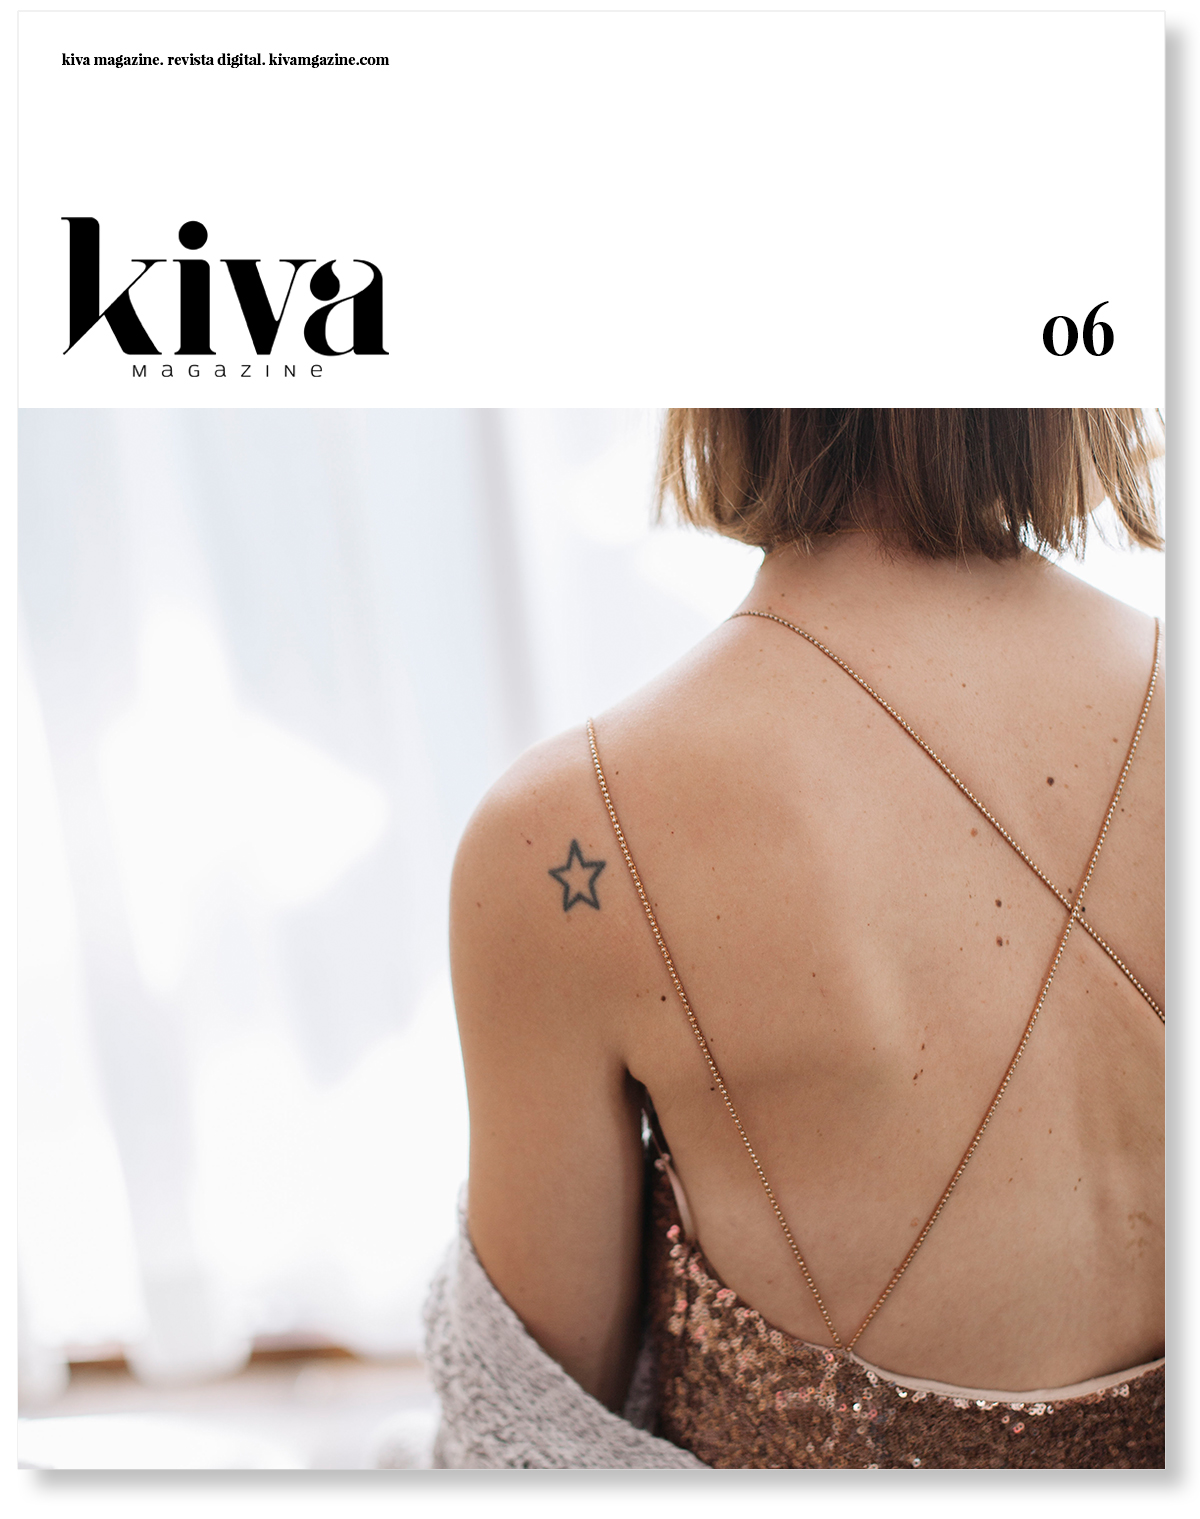 Sexto número Kiva magazine